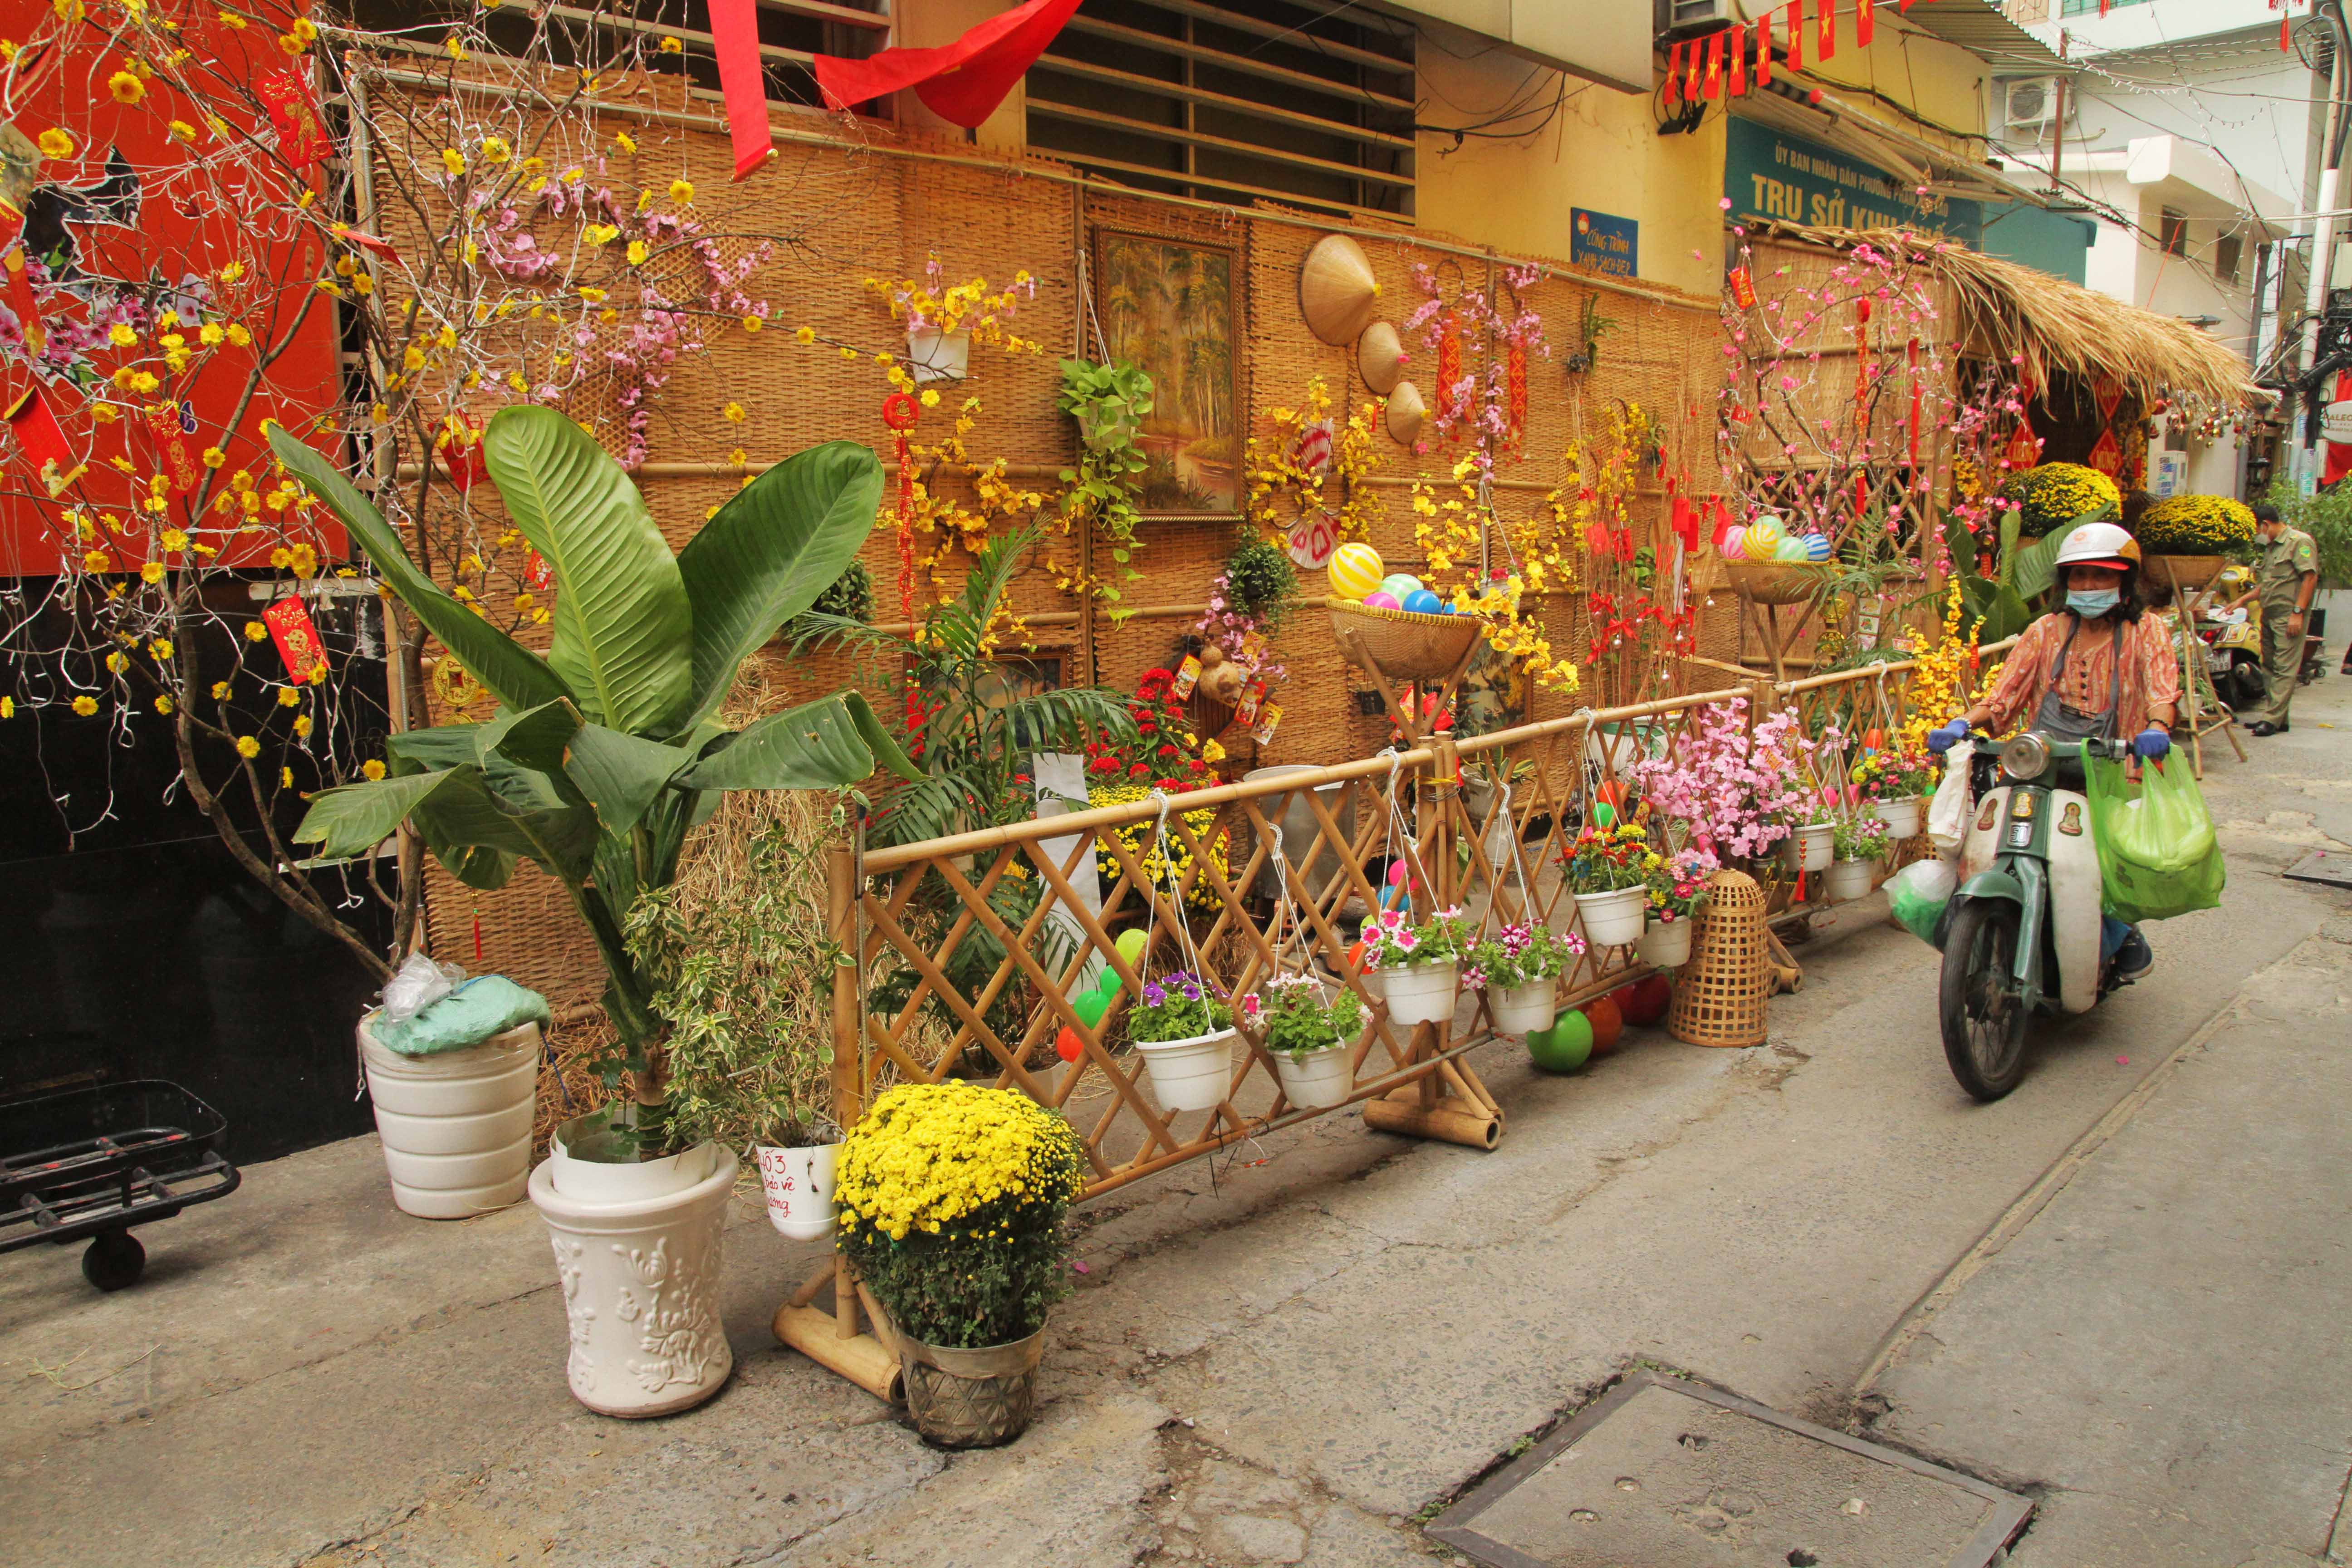 Tết đến rồi, hãy đến TP.HCM và thưởng thức vẻ đẹp của đường phố được trang hoàng rực rỡ. Những bức ảnh chụp tết đường phố TP.HCM sẽ cho bạn thấy rõ sự ấm áp và đậm chất truyền thống của người Việt.